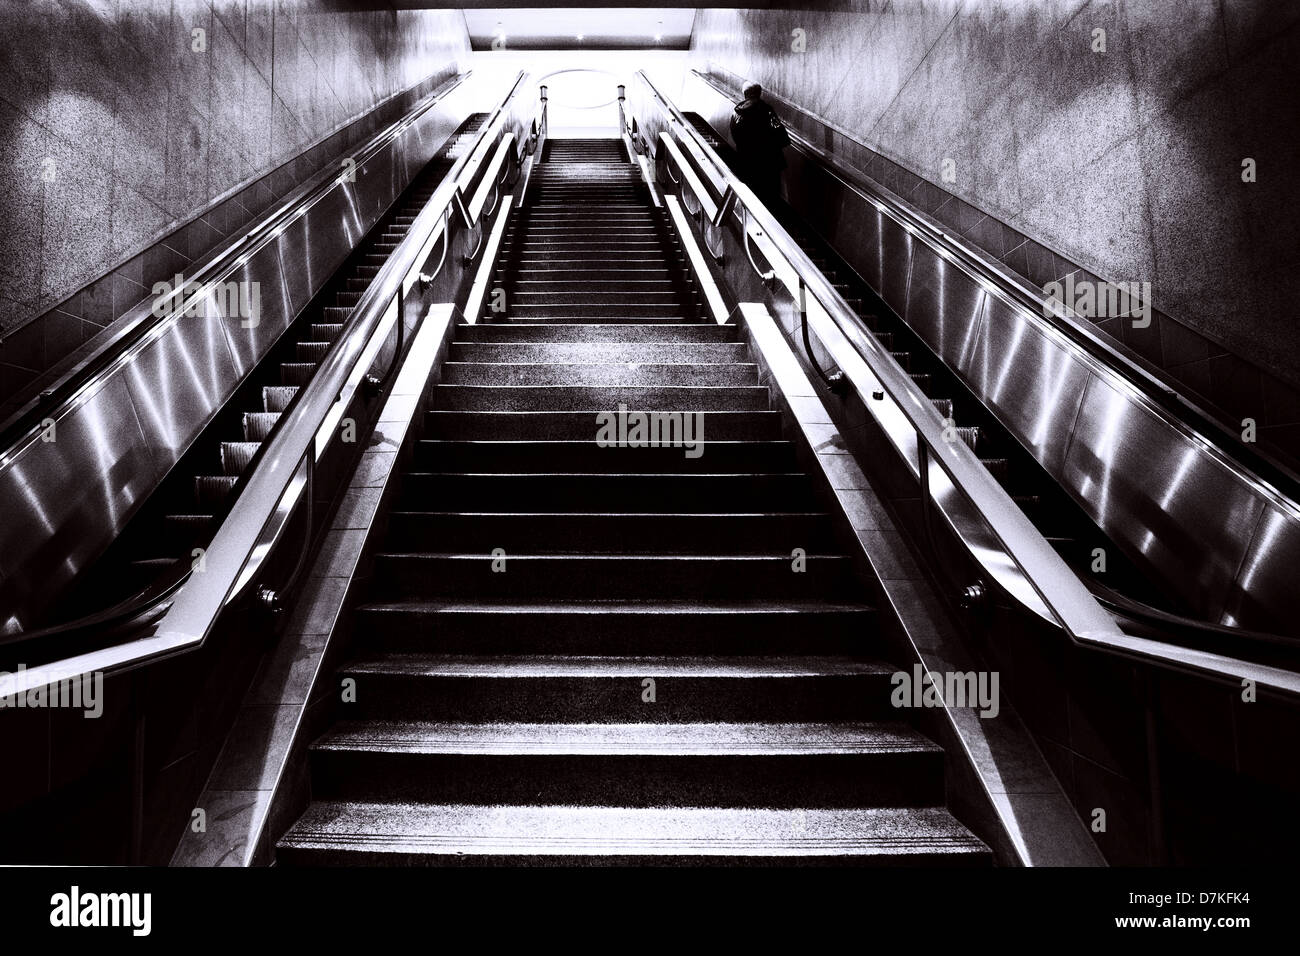 Escalier et escaliers mécaniques dans une station de métro de Montréal Banque D'Images